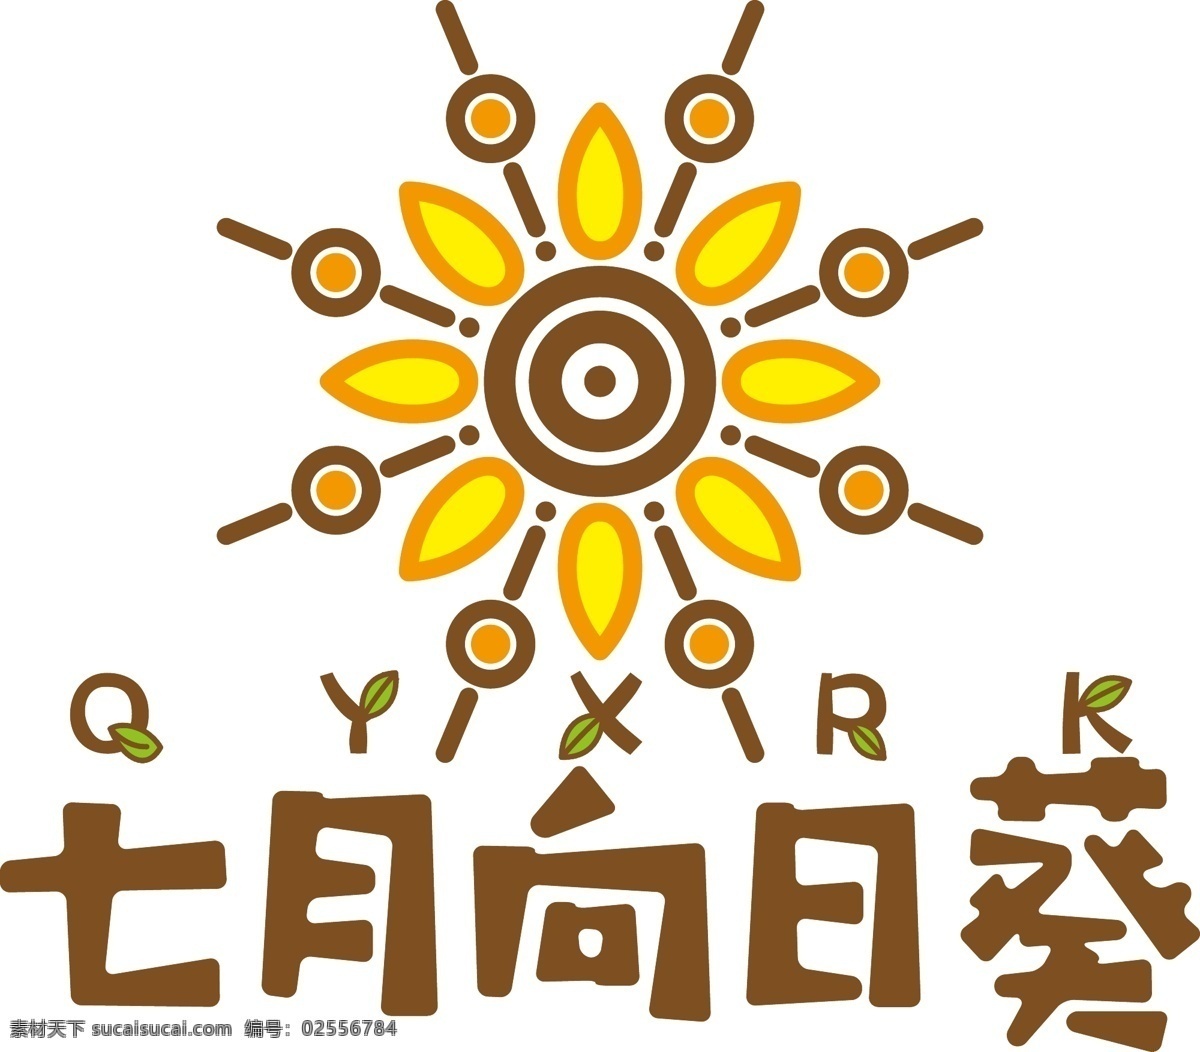 七月 向日葵 logo 七月向日葵 美术 标志 vi logo设计